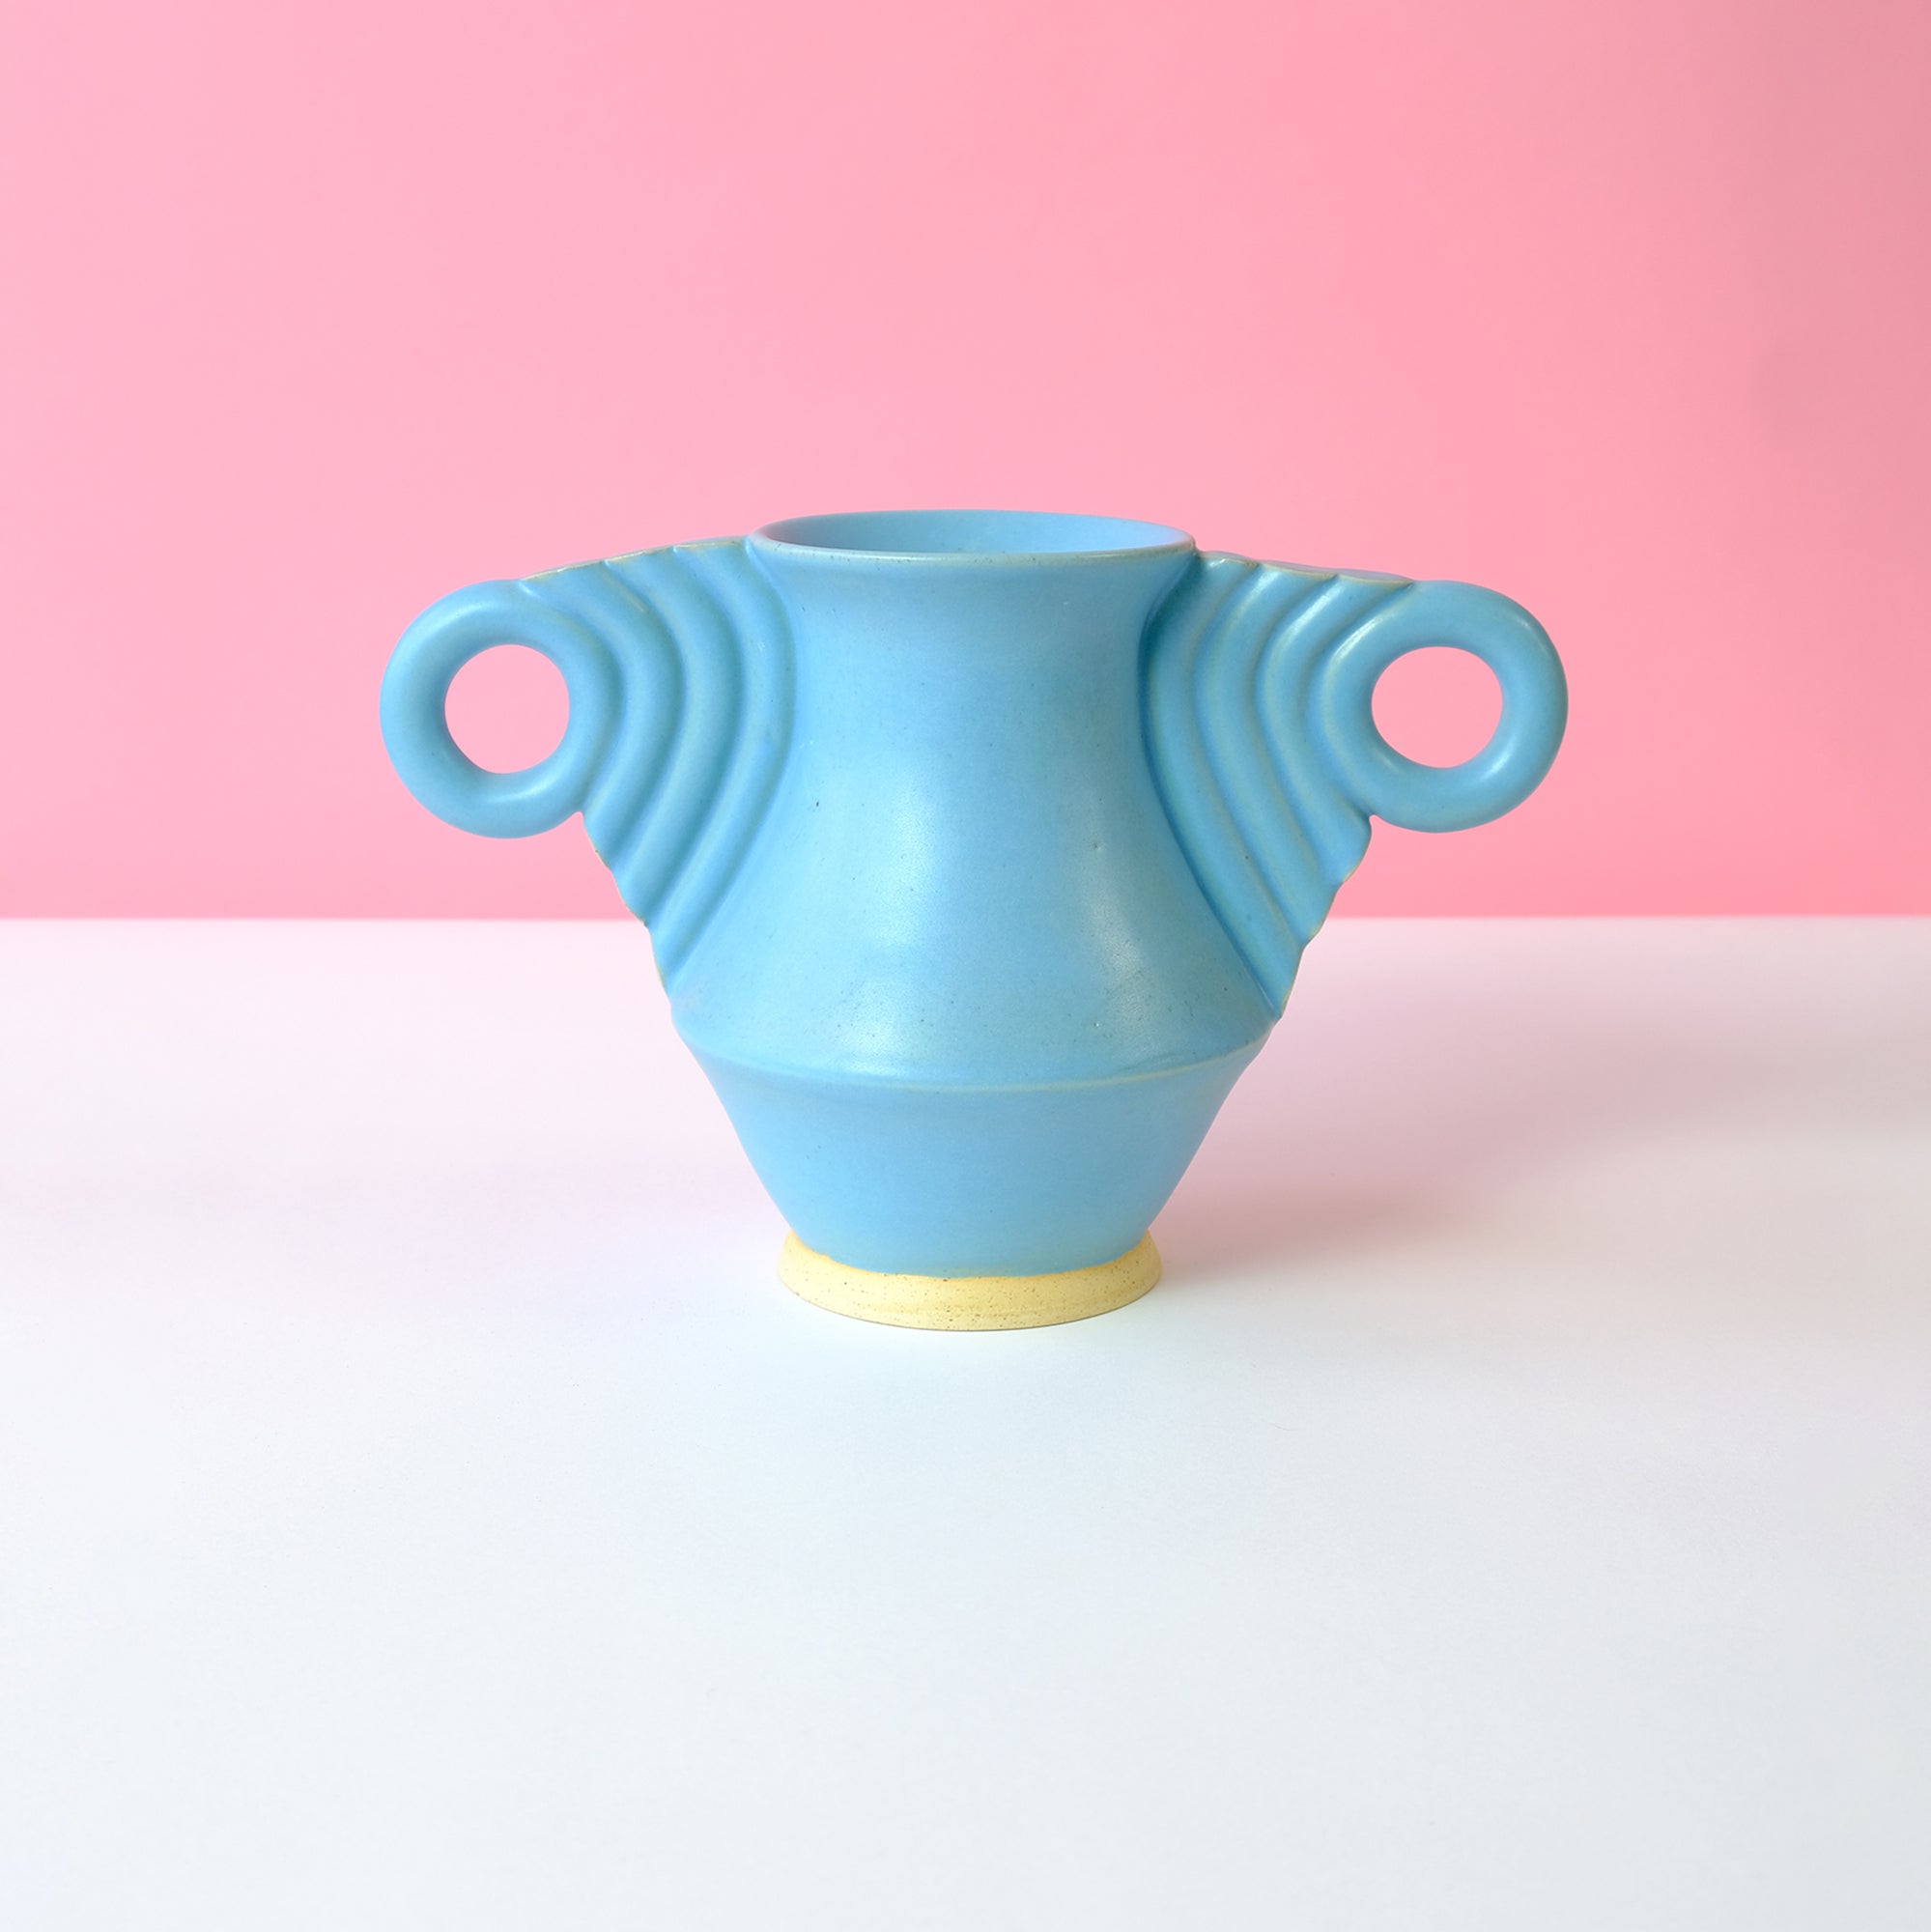 Beginner Ceramics Small Vase in Baby Blue